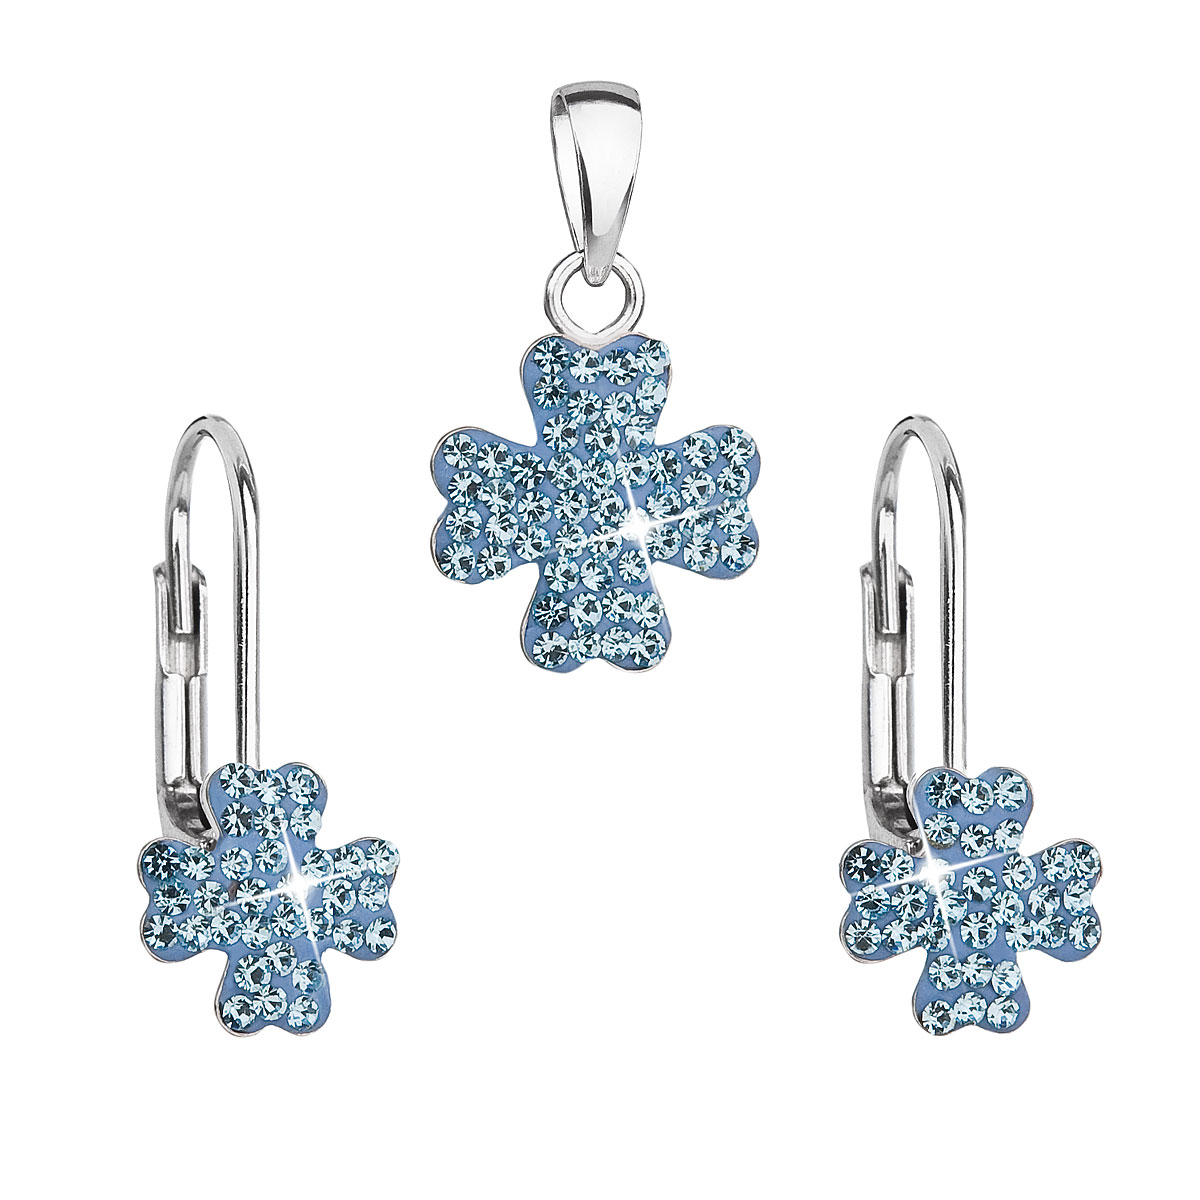 Evolution Group Sada šperků s krystaly Swarovski náušnice a přívěsek modrý čtyřlístek 39146.3